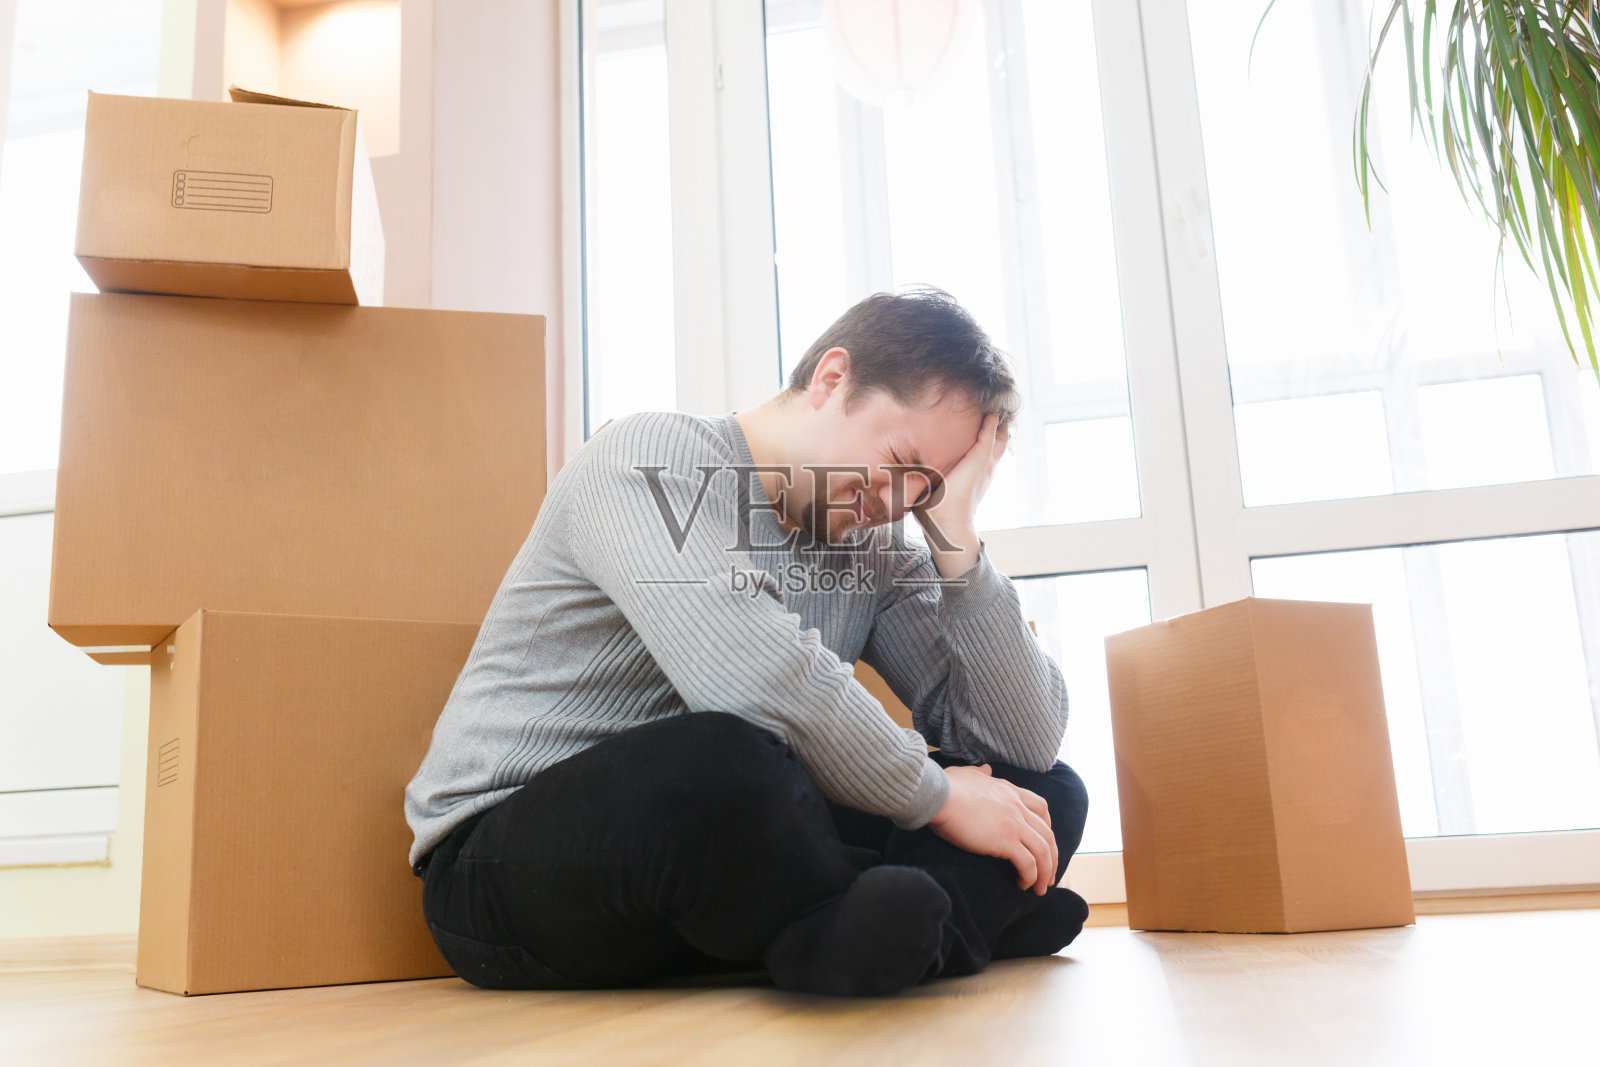 担心和沮丧的年轻人坐在包装盒子的房子出售照片摄影图片